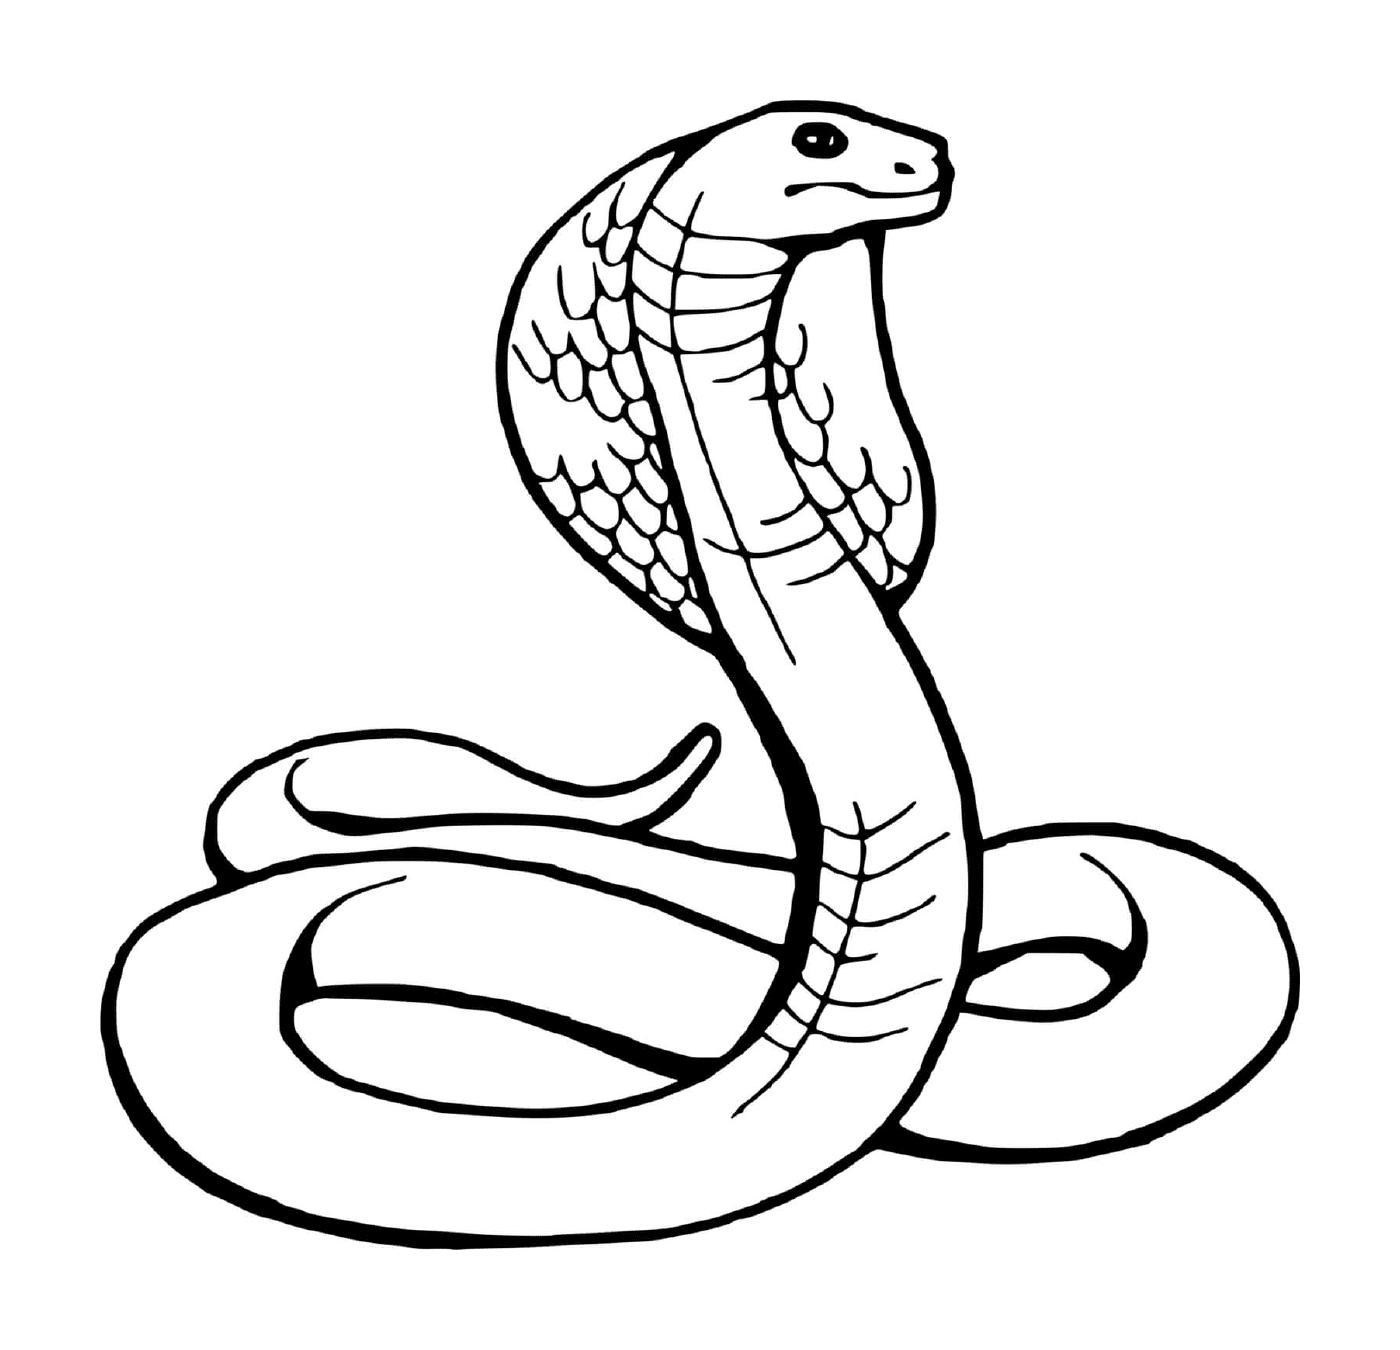   Serpent, snake 